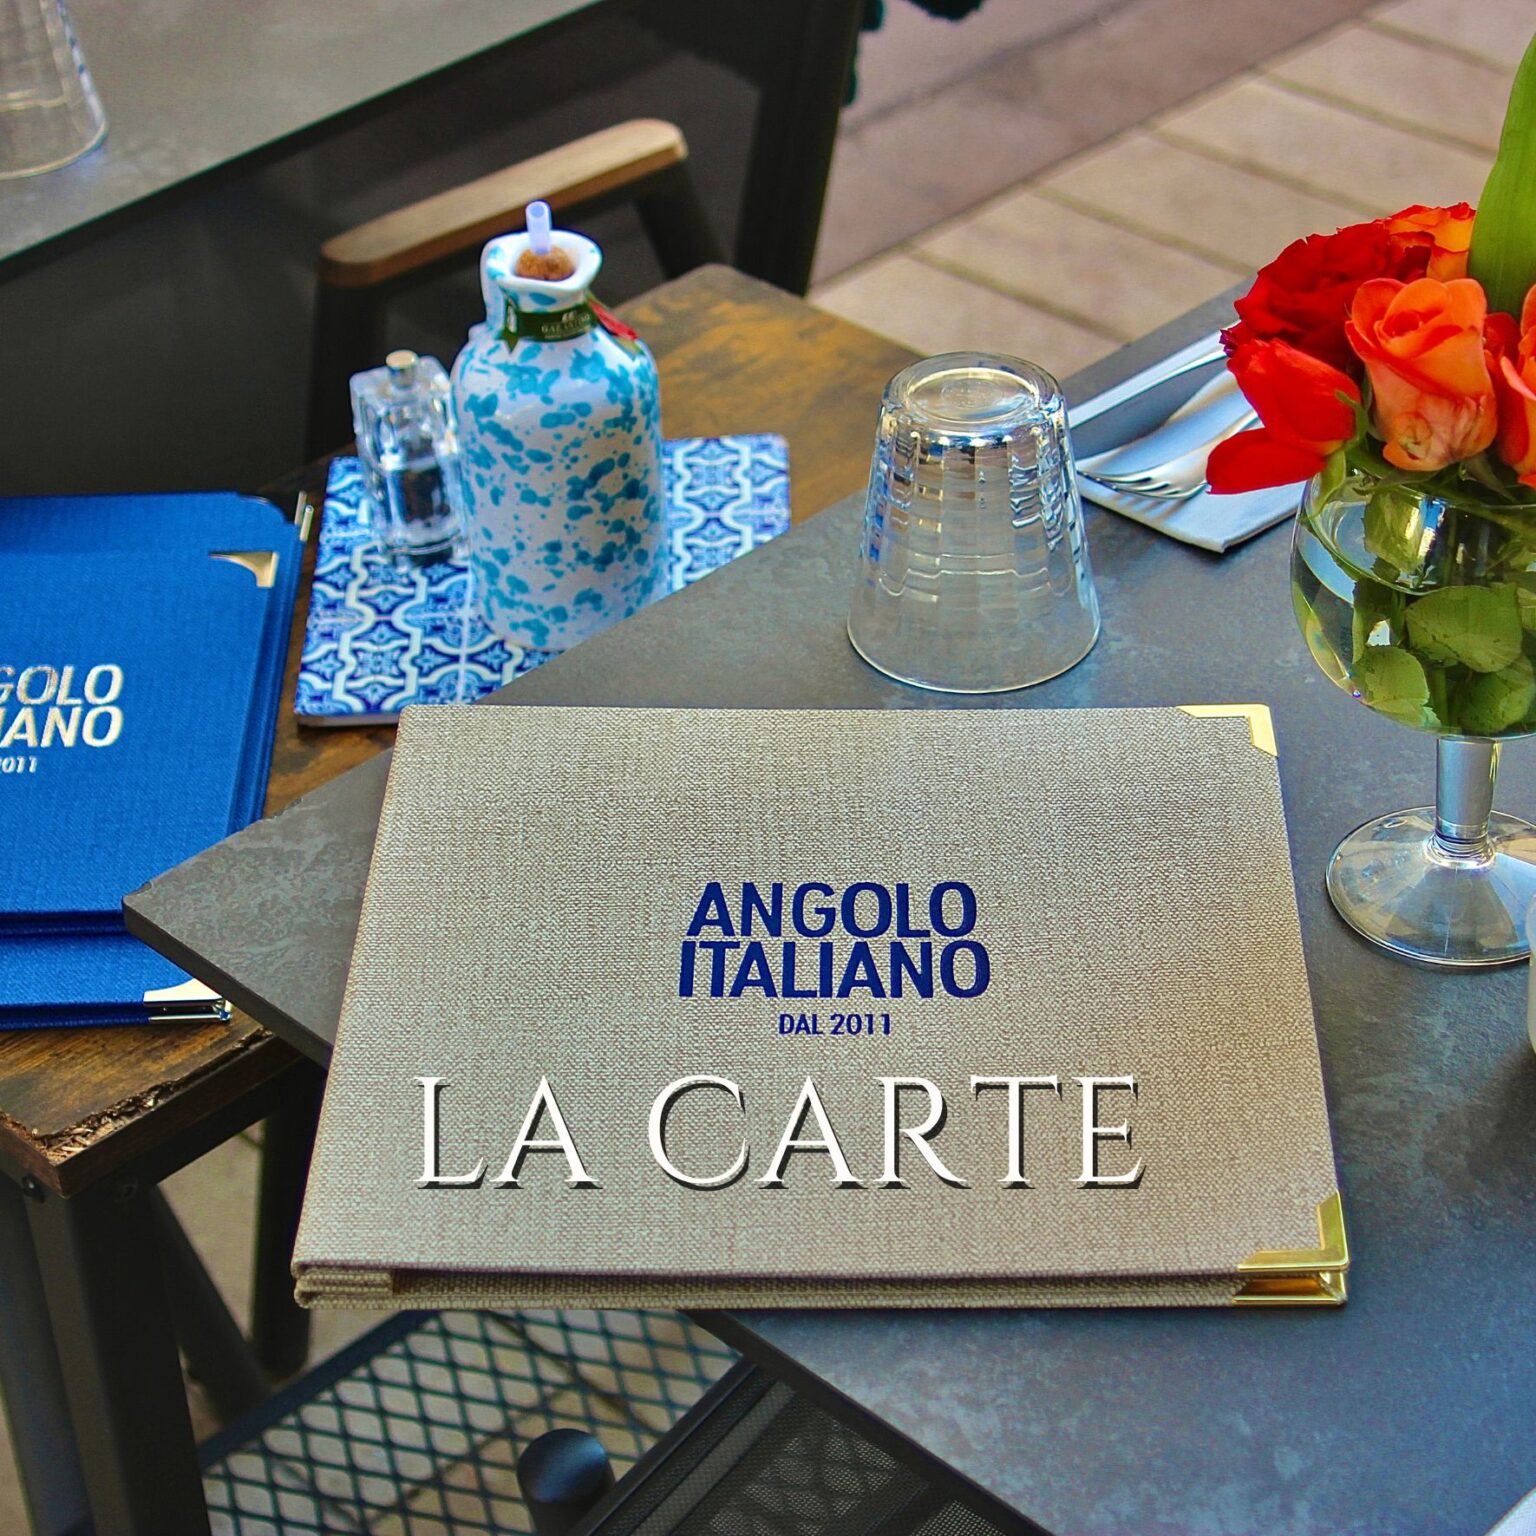 Restaurant cannes Angolo Italiano La carte